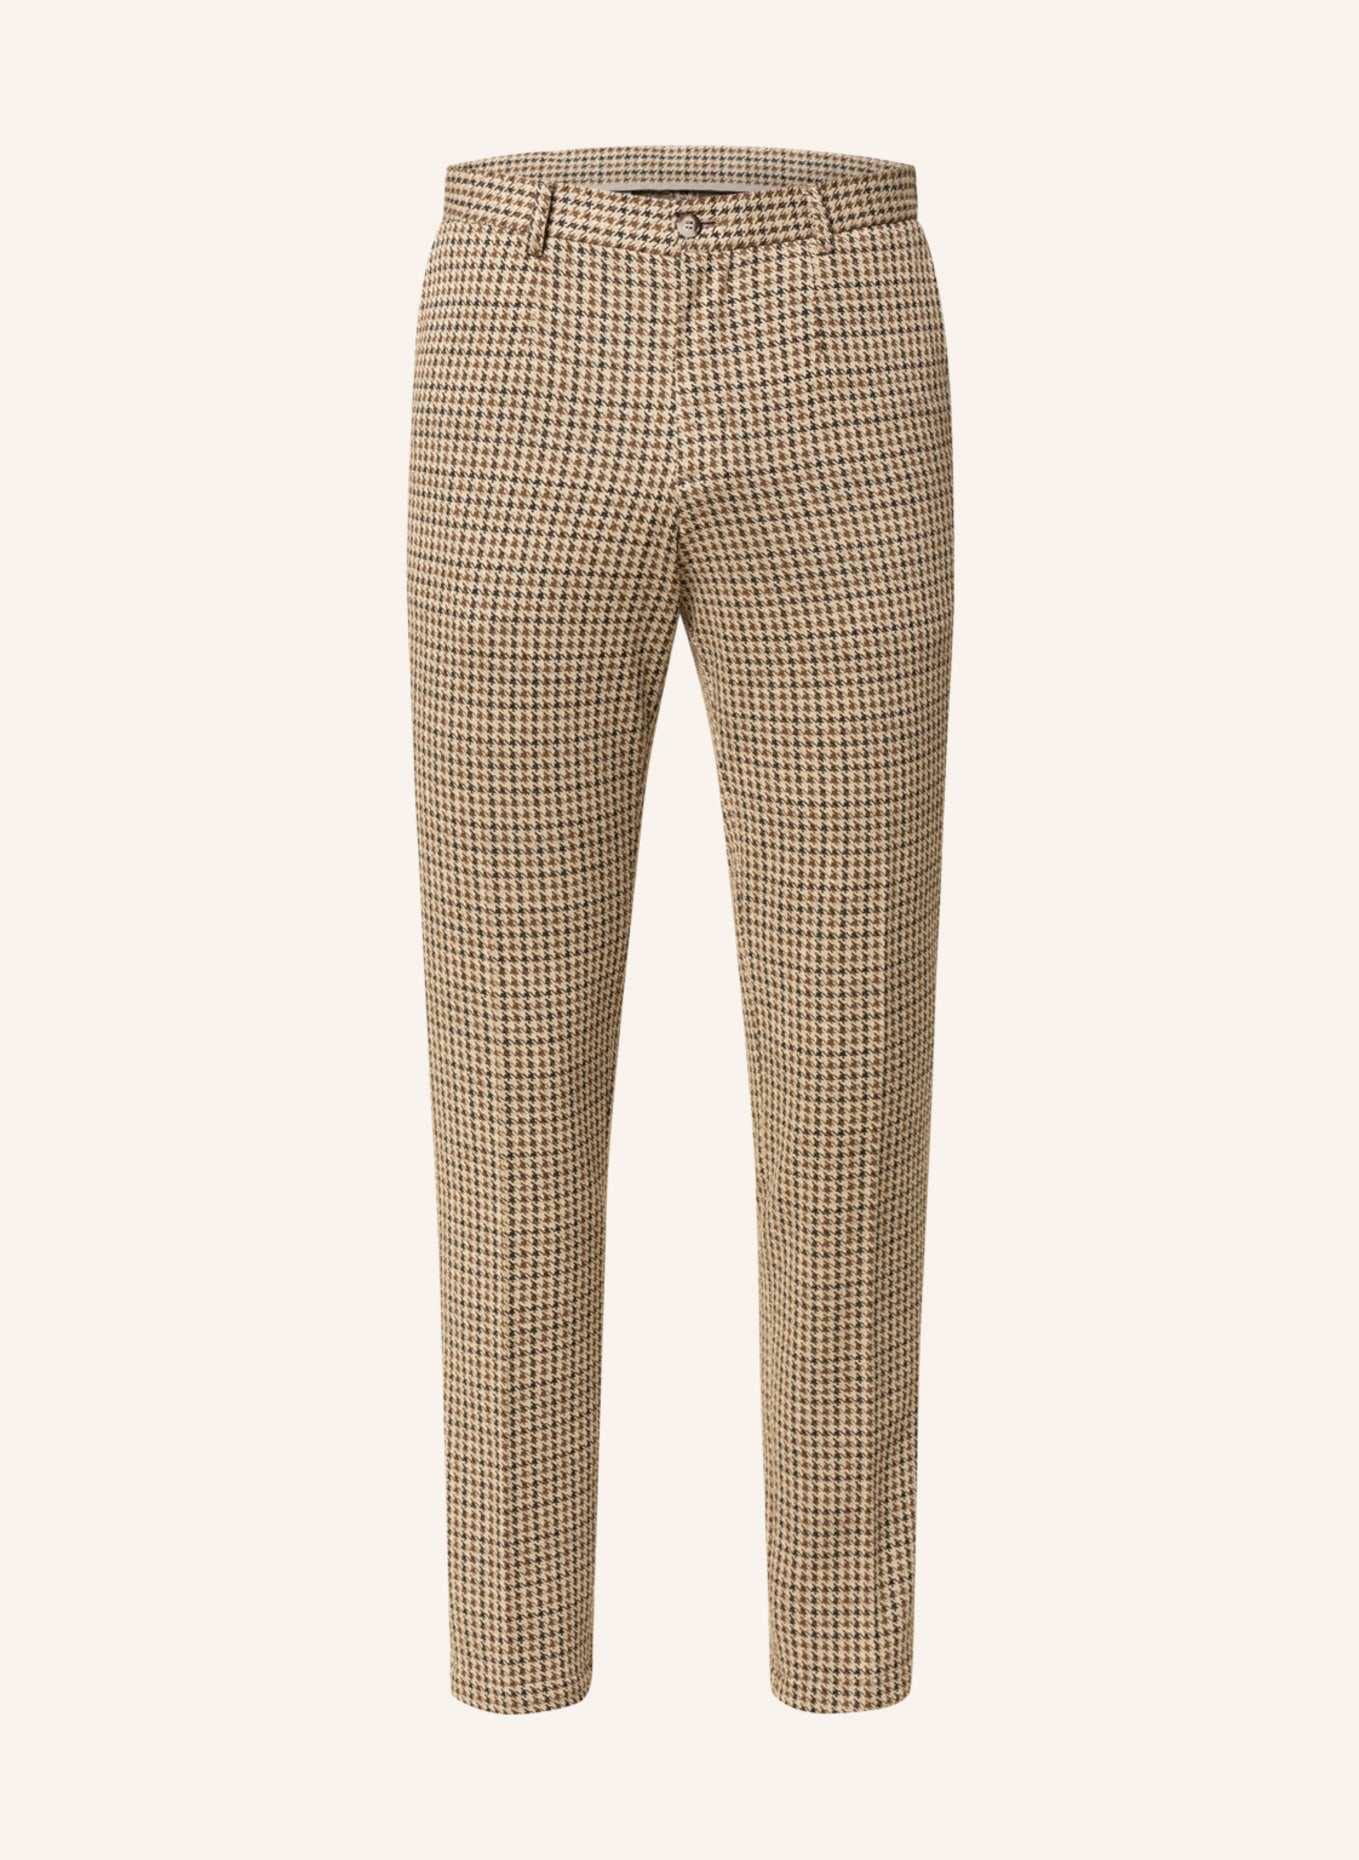 PAUL Suit pants slim fit, Color: 260 Brown (Image 1)